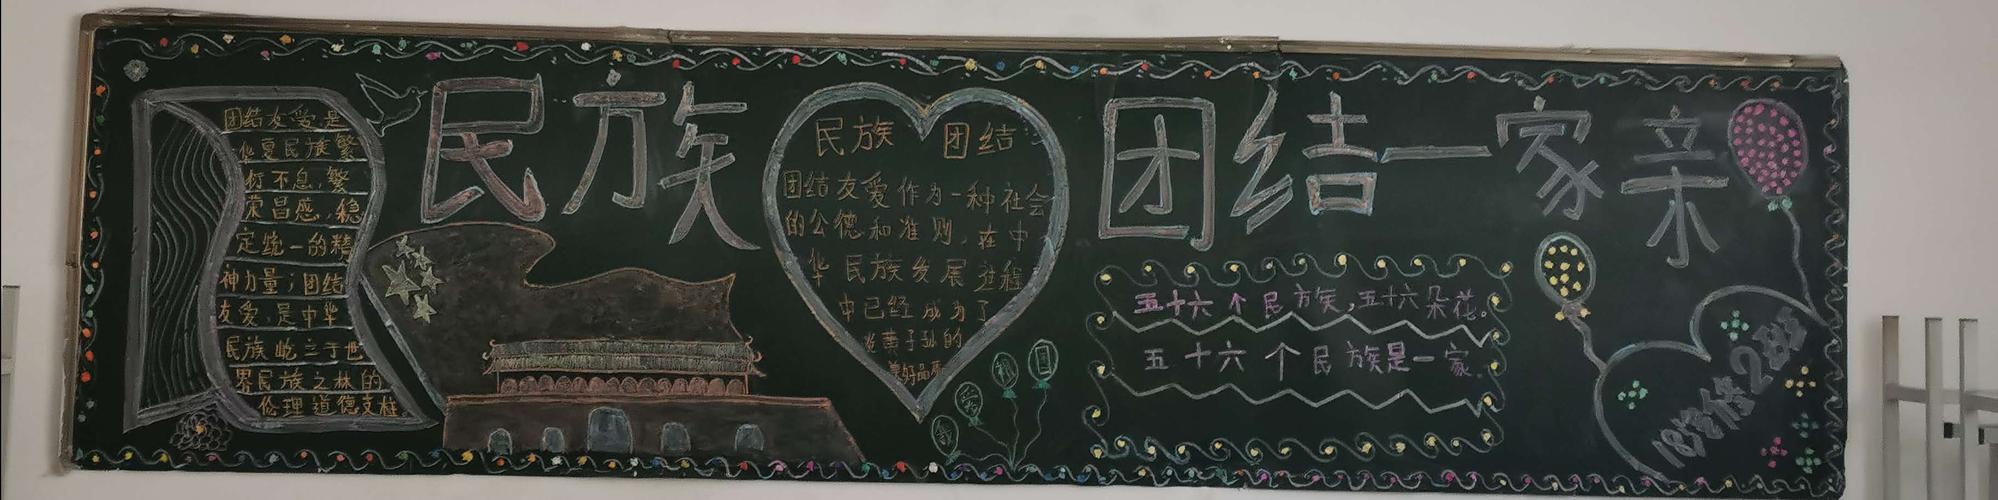 民族团结一家亲共筑中国梦图木舒克职业技术学校开展黑板报评比